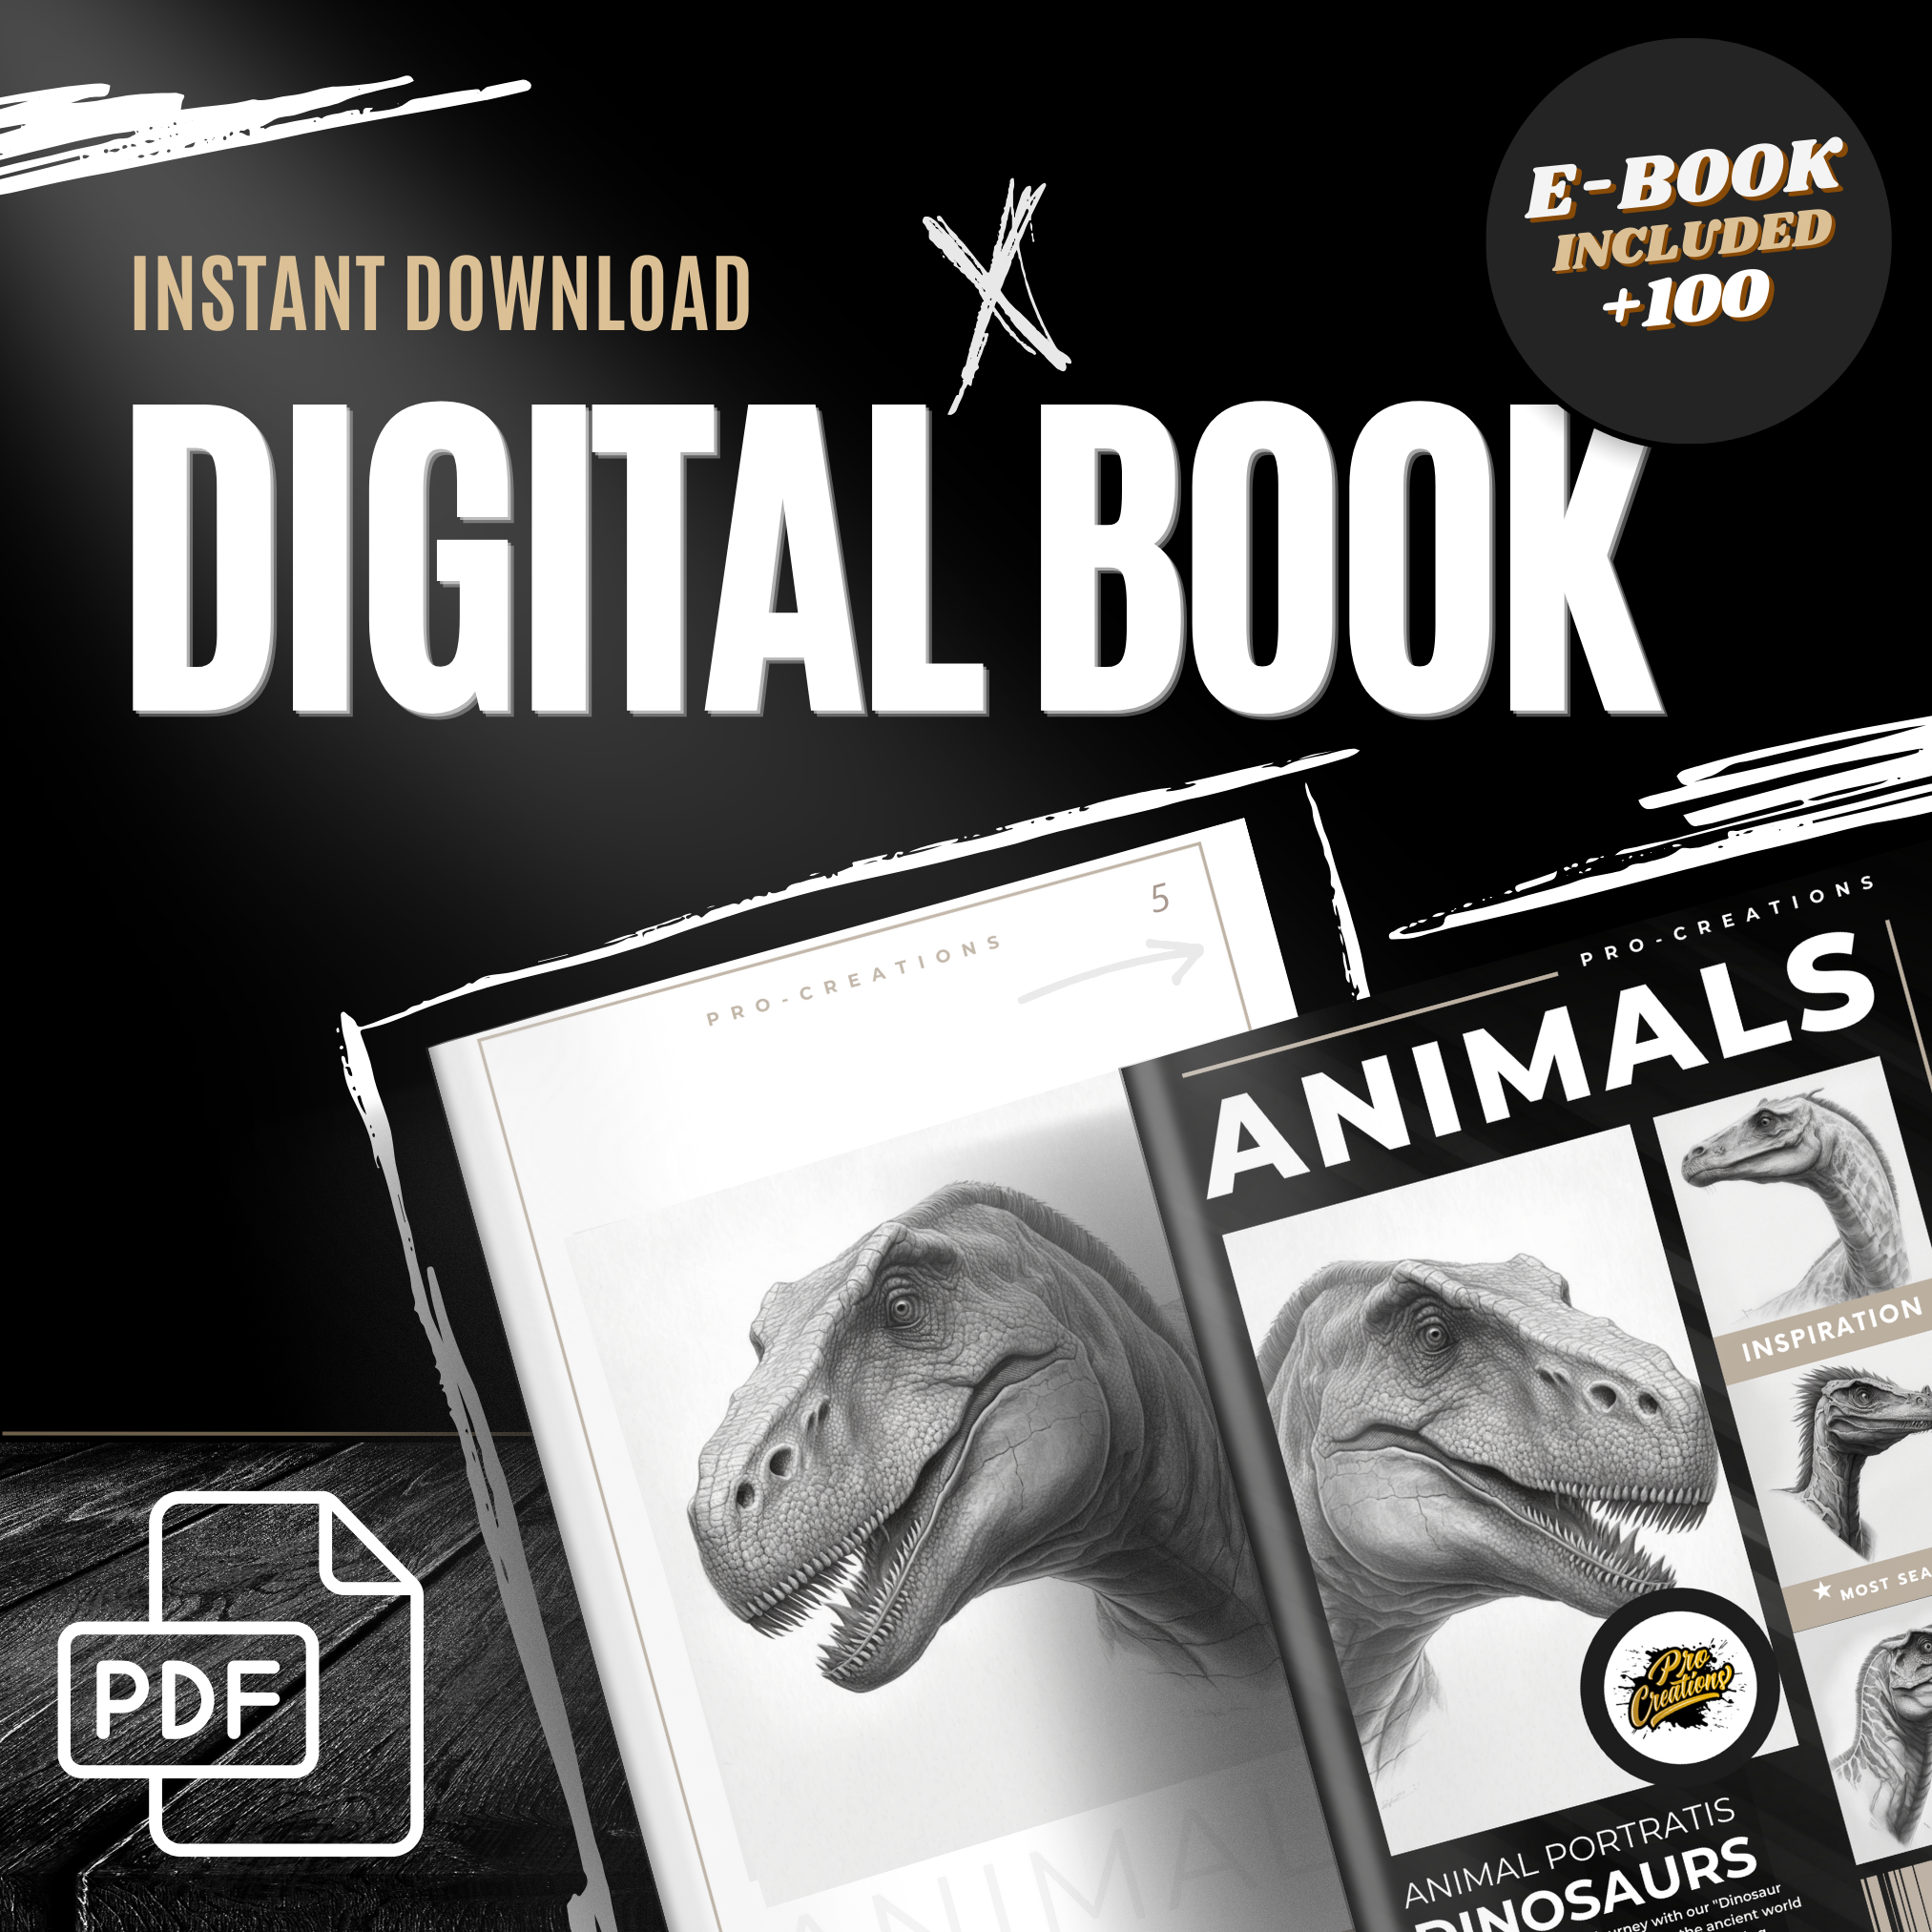 Digitale Referenzdesignsammlung Dinosaurier: 100 Procreate- und Skizzenbuchbilder